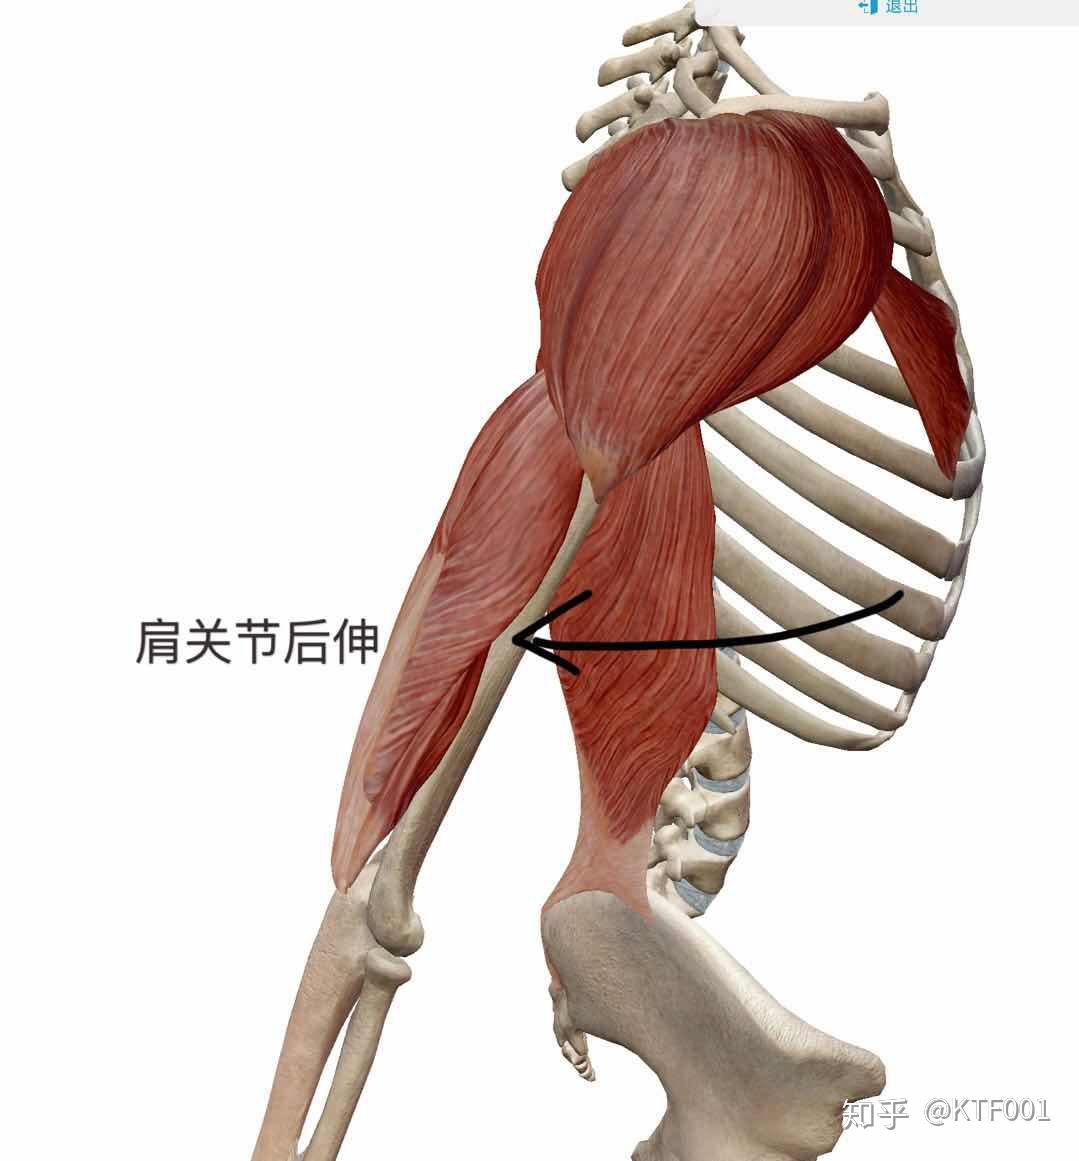 三角肌后束的功能d3三角肌中束只有一个功能就是肩关节外展三角肌中束